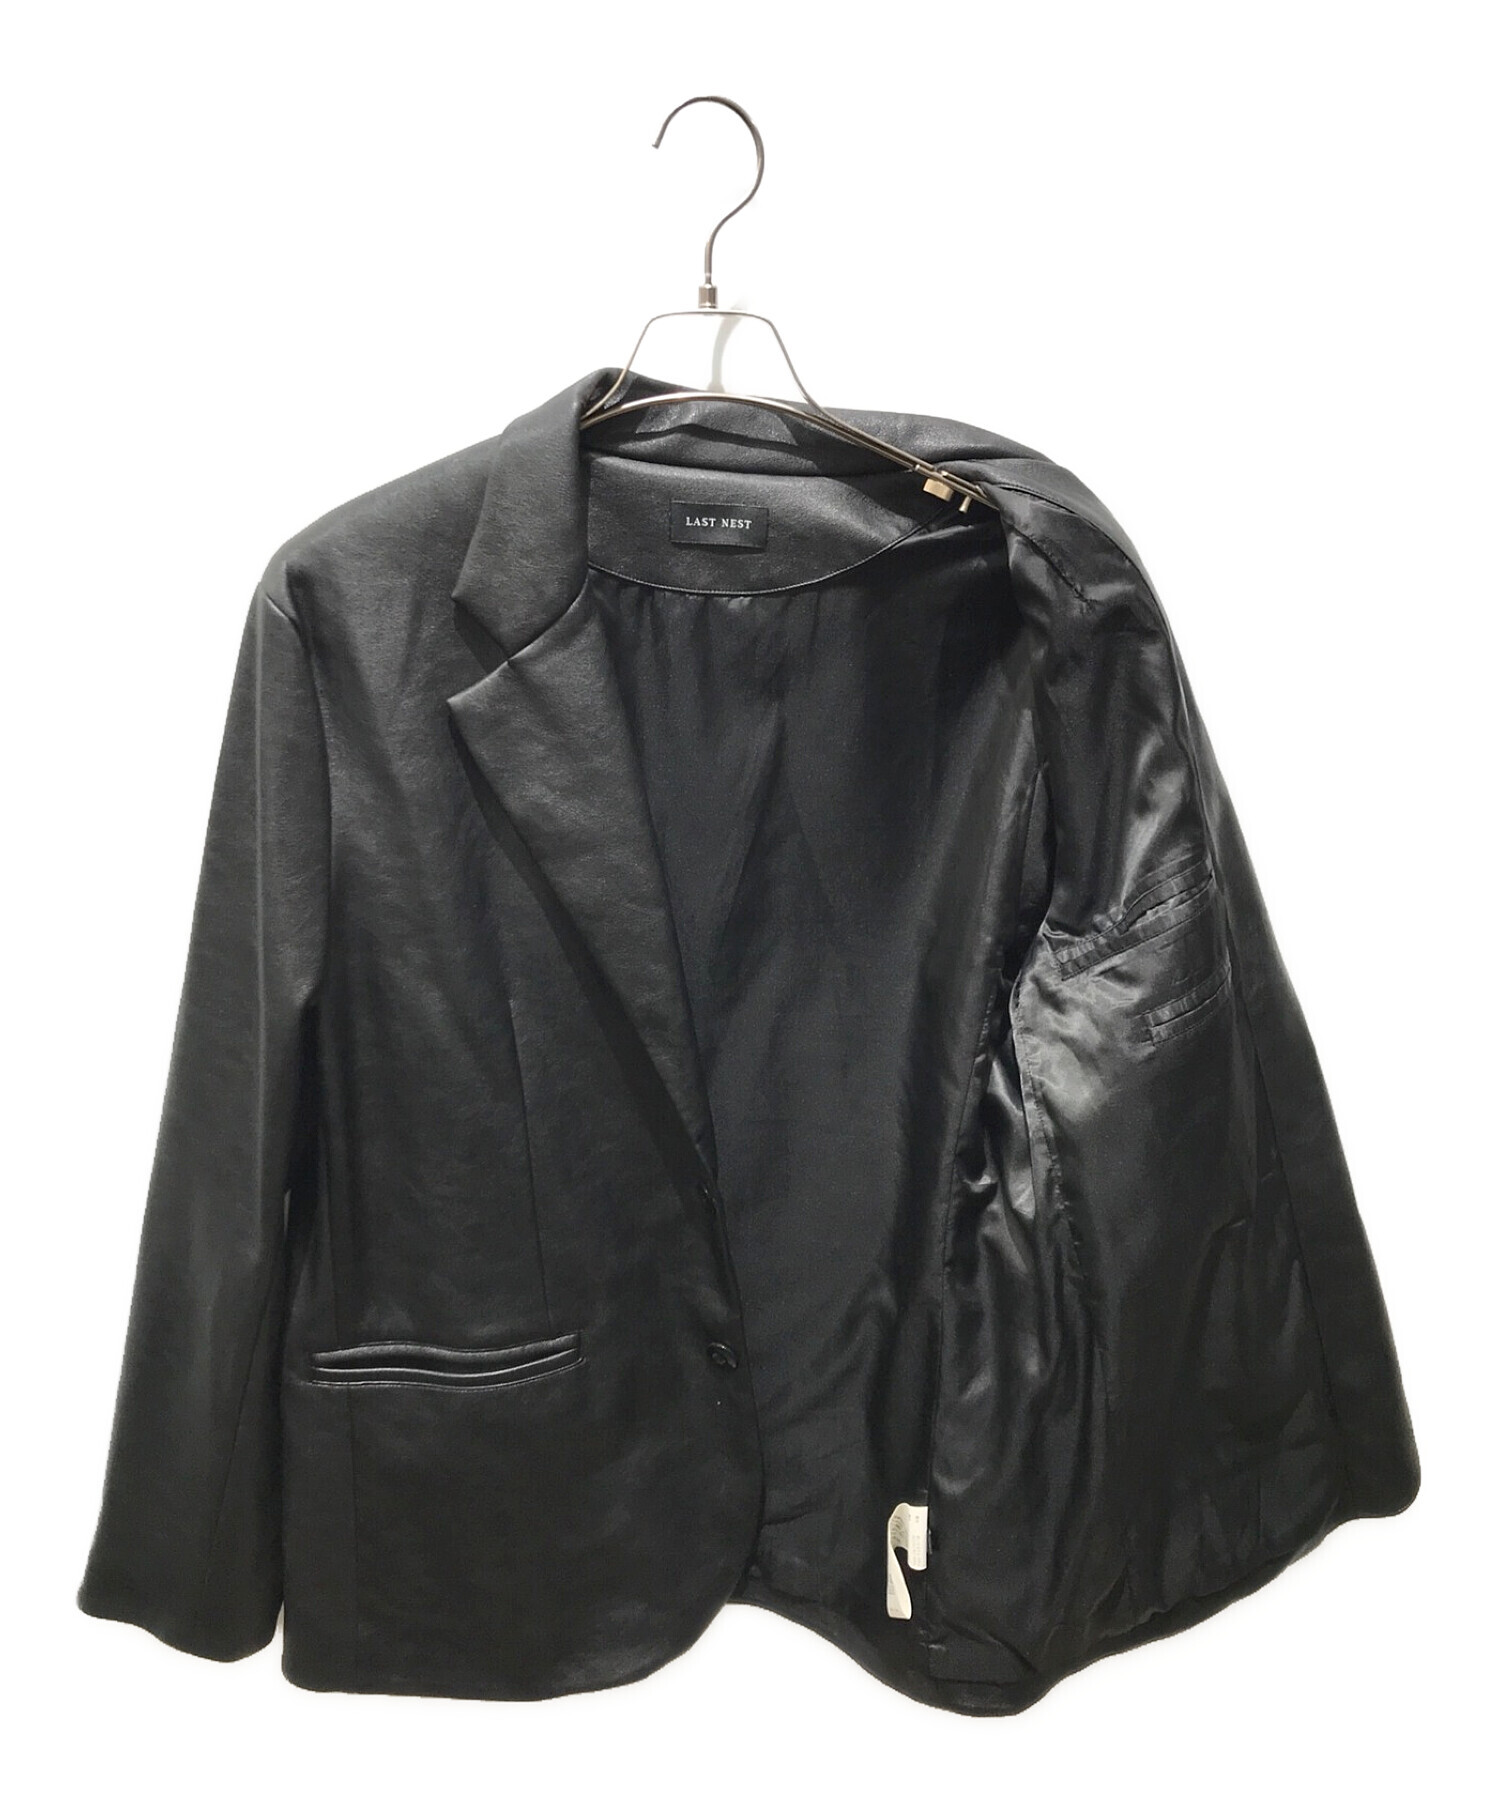 LAST NEST (ラストネスト) フェイクレザージャケット ブラック サイズ:L